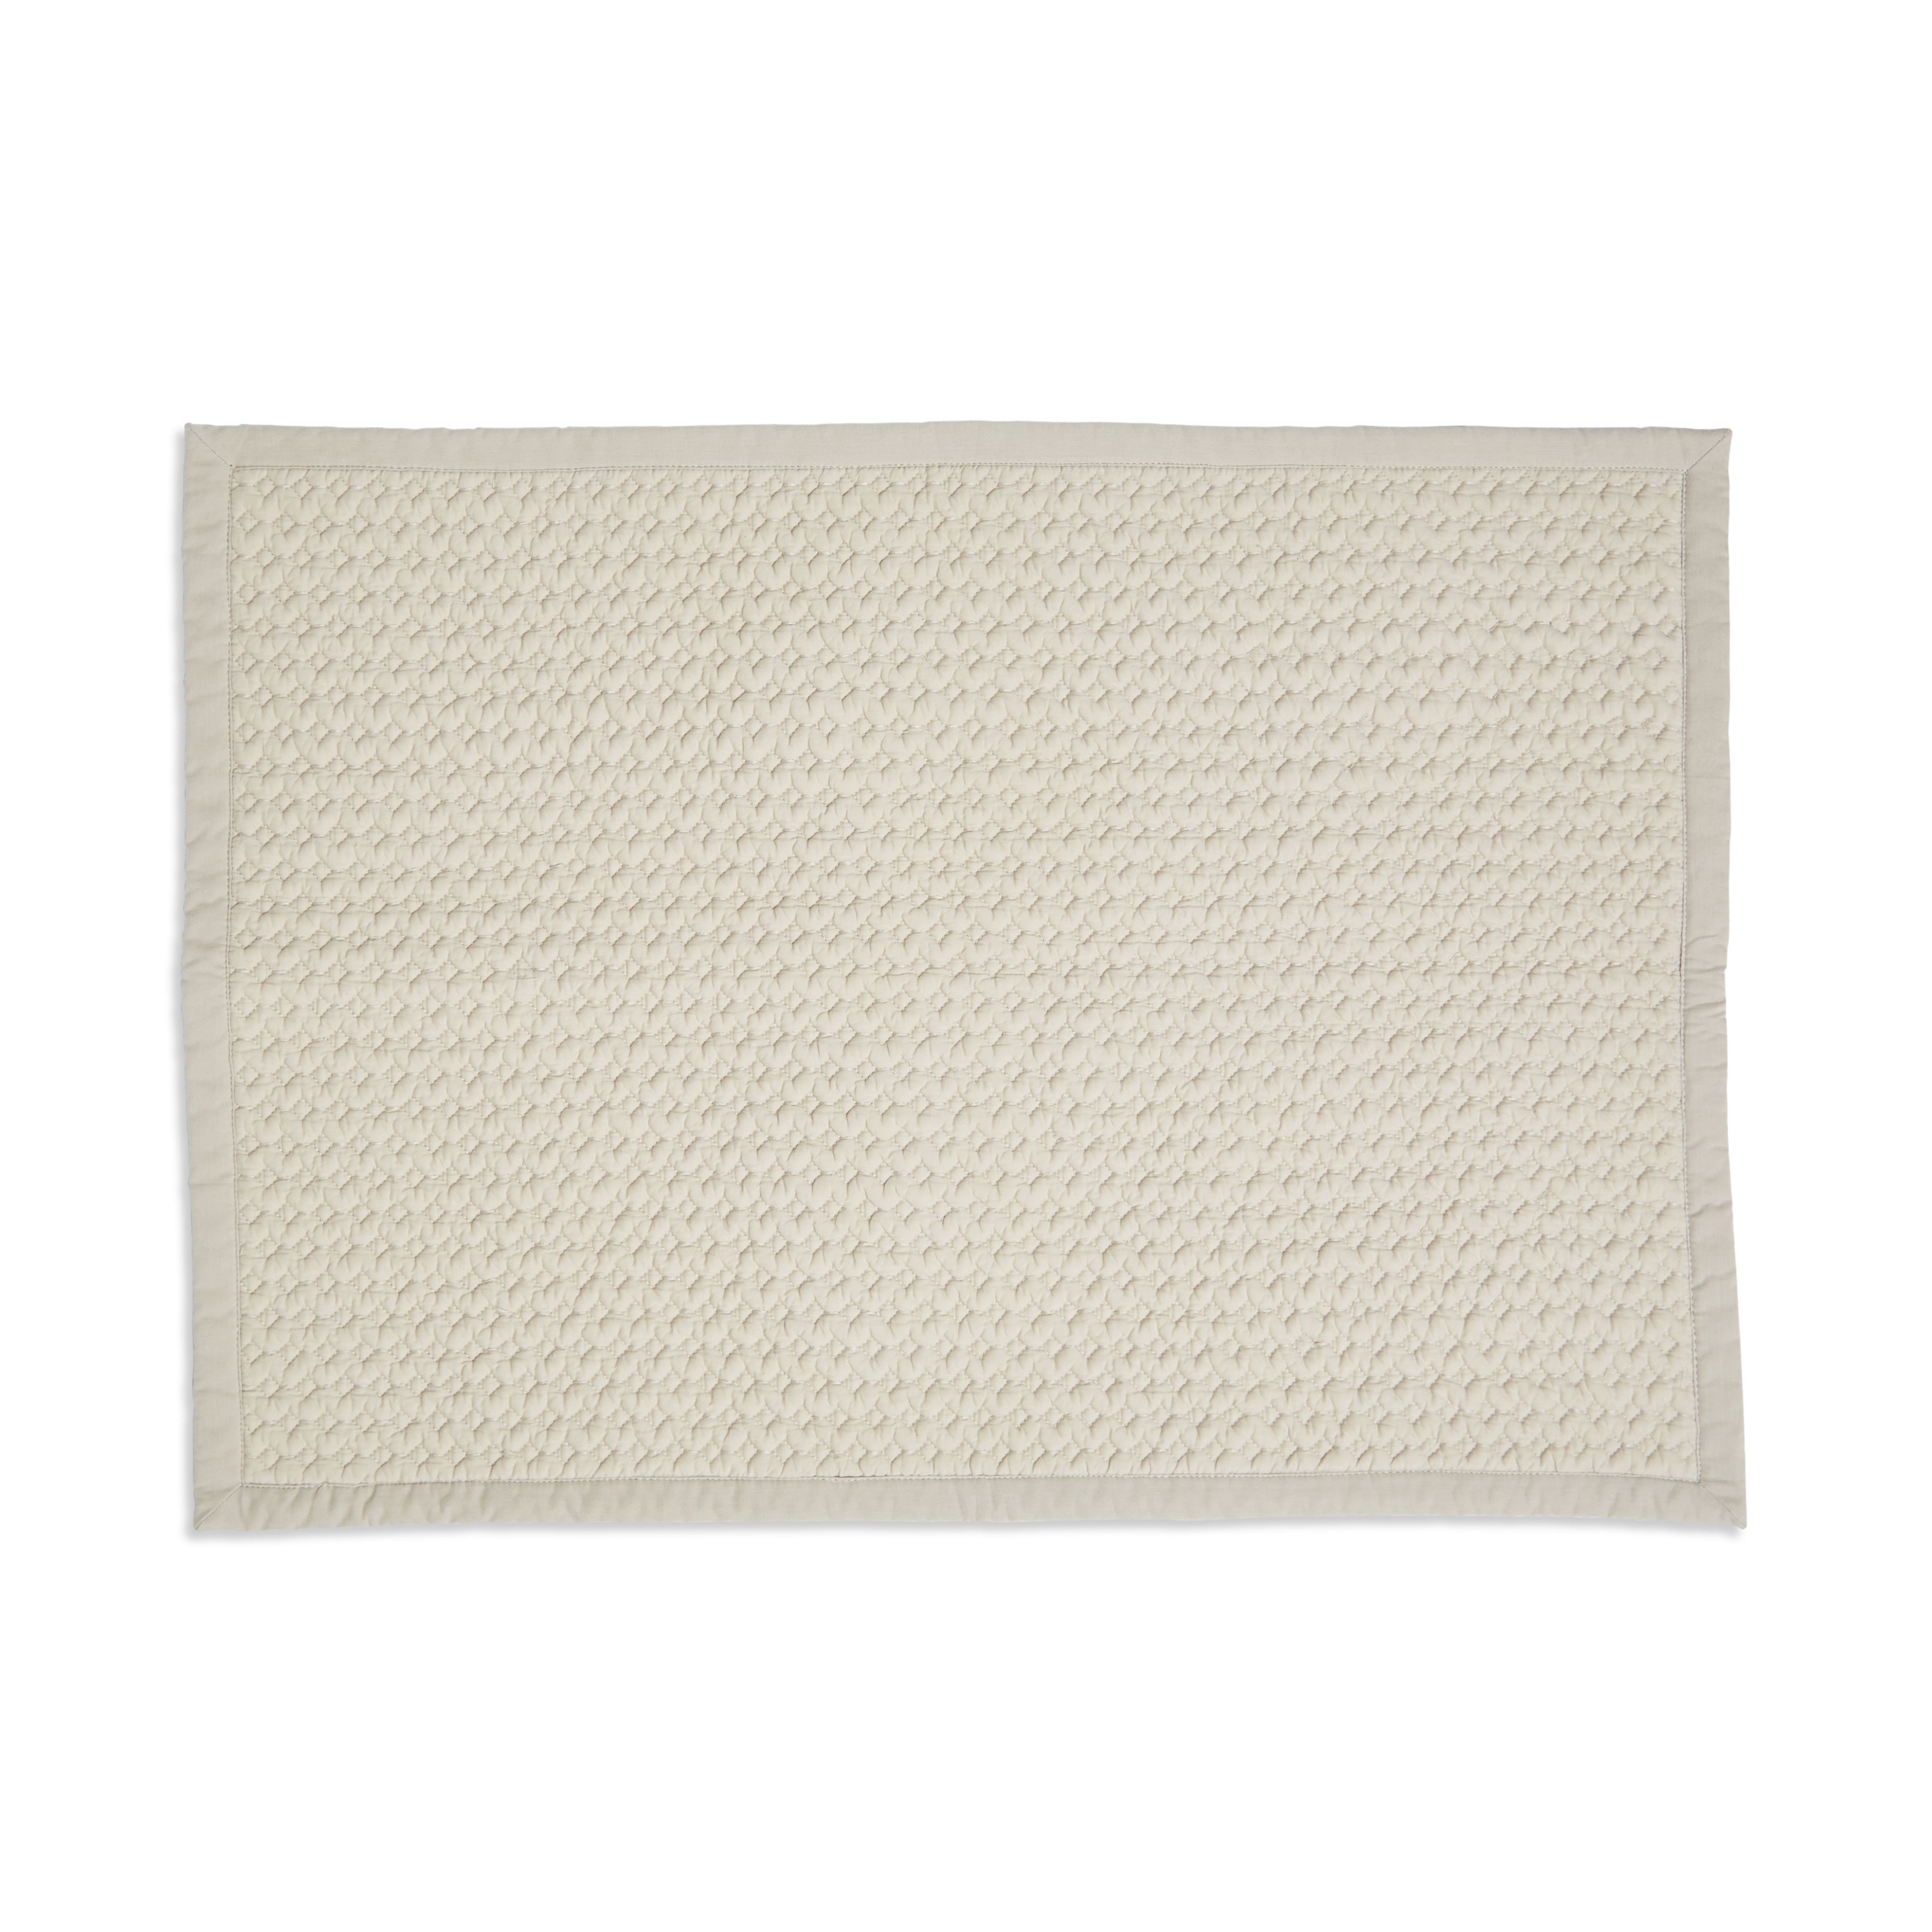 Marinette Saint-Tropez Version Beige Cotton Bath mat (L)500mm (W)700mm ...